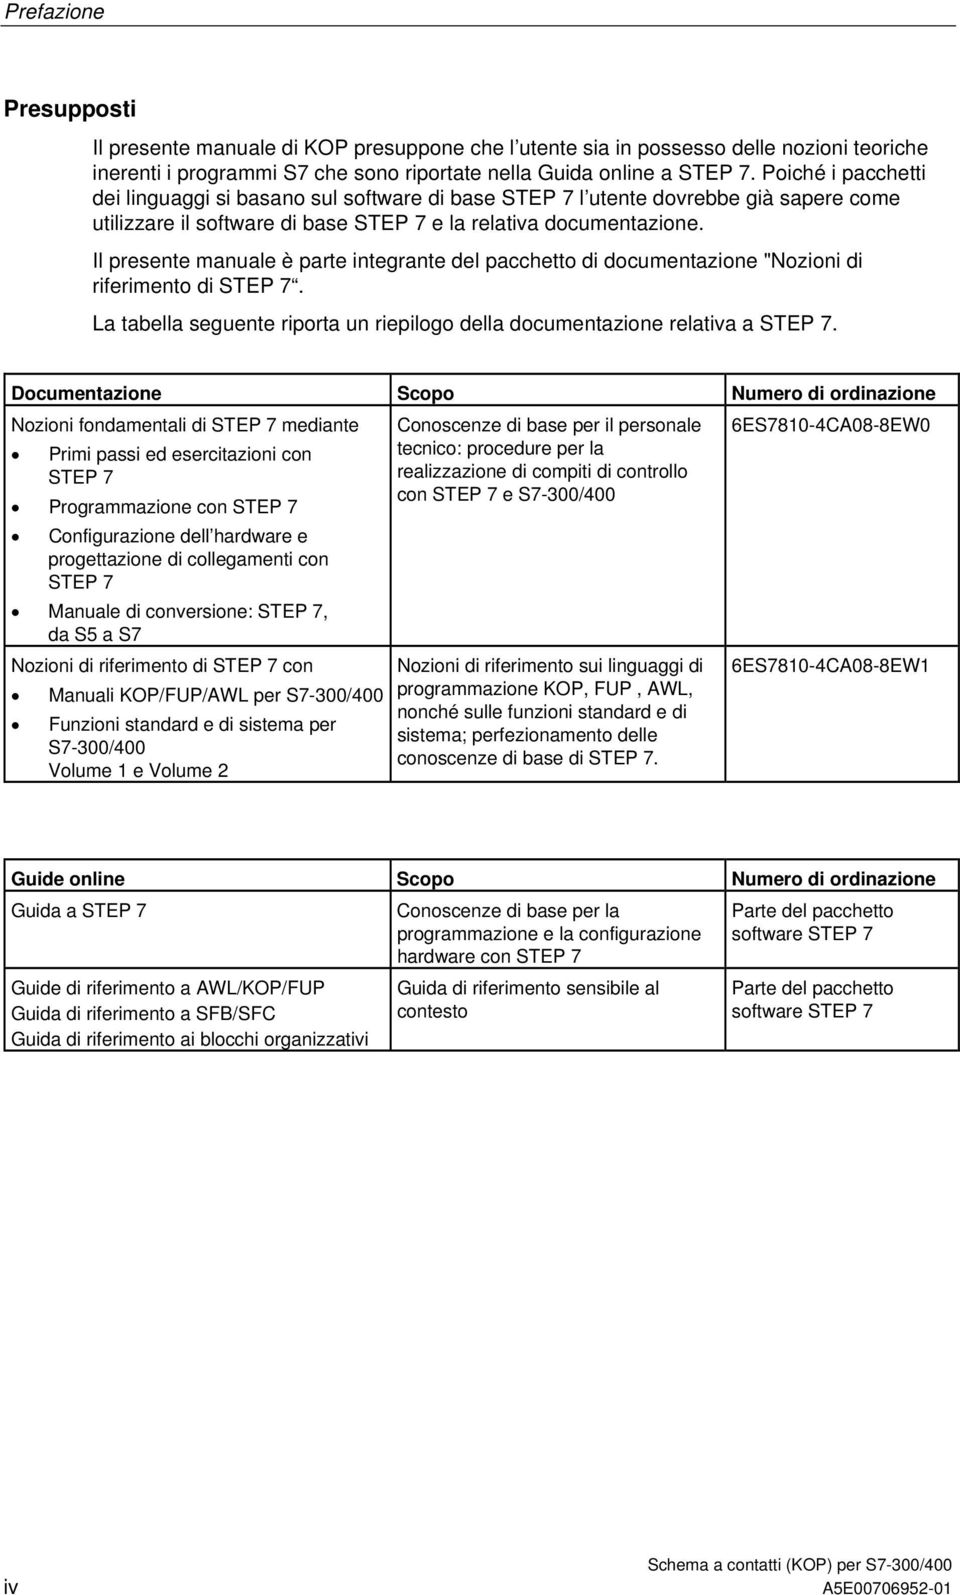 Il presente manuale è parte integrante del pacchetto di documentazione "Nozioni di riferimento di STEP 7. La tabella seguente riporta un riepilogo della documentazione relativa a STEP 7.